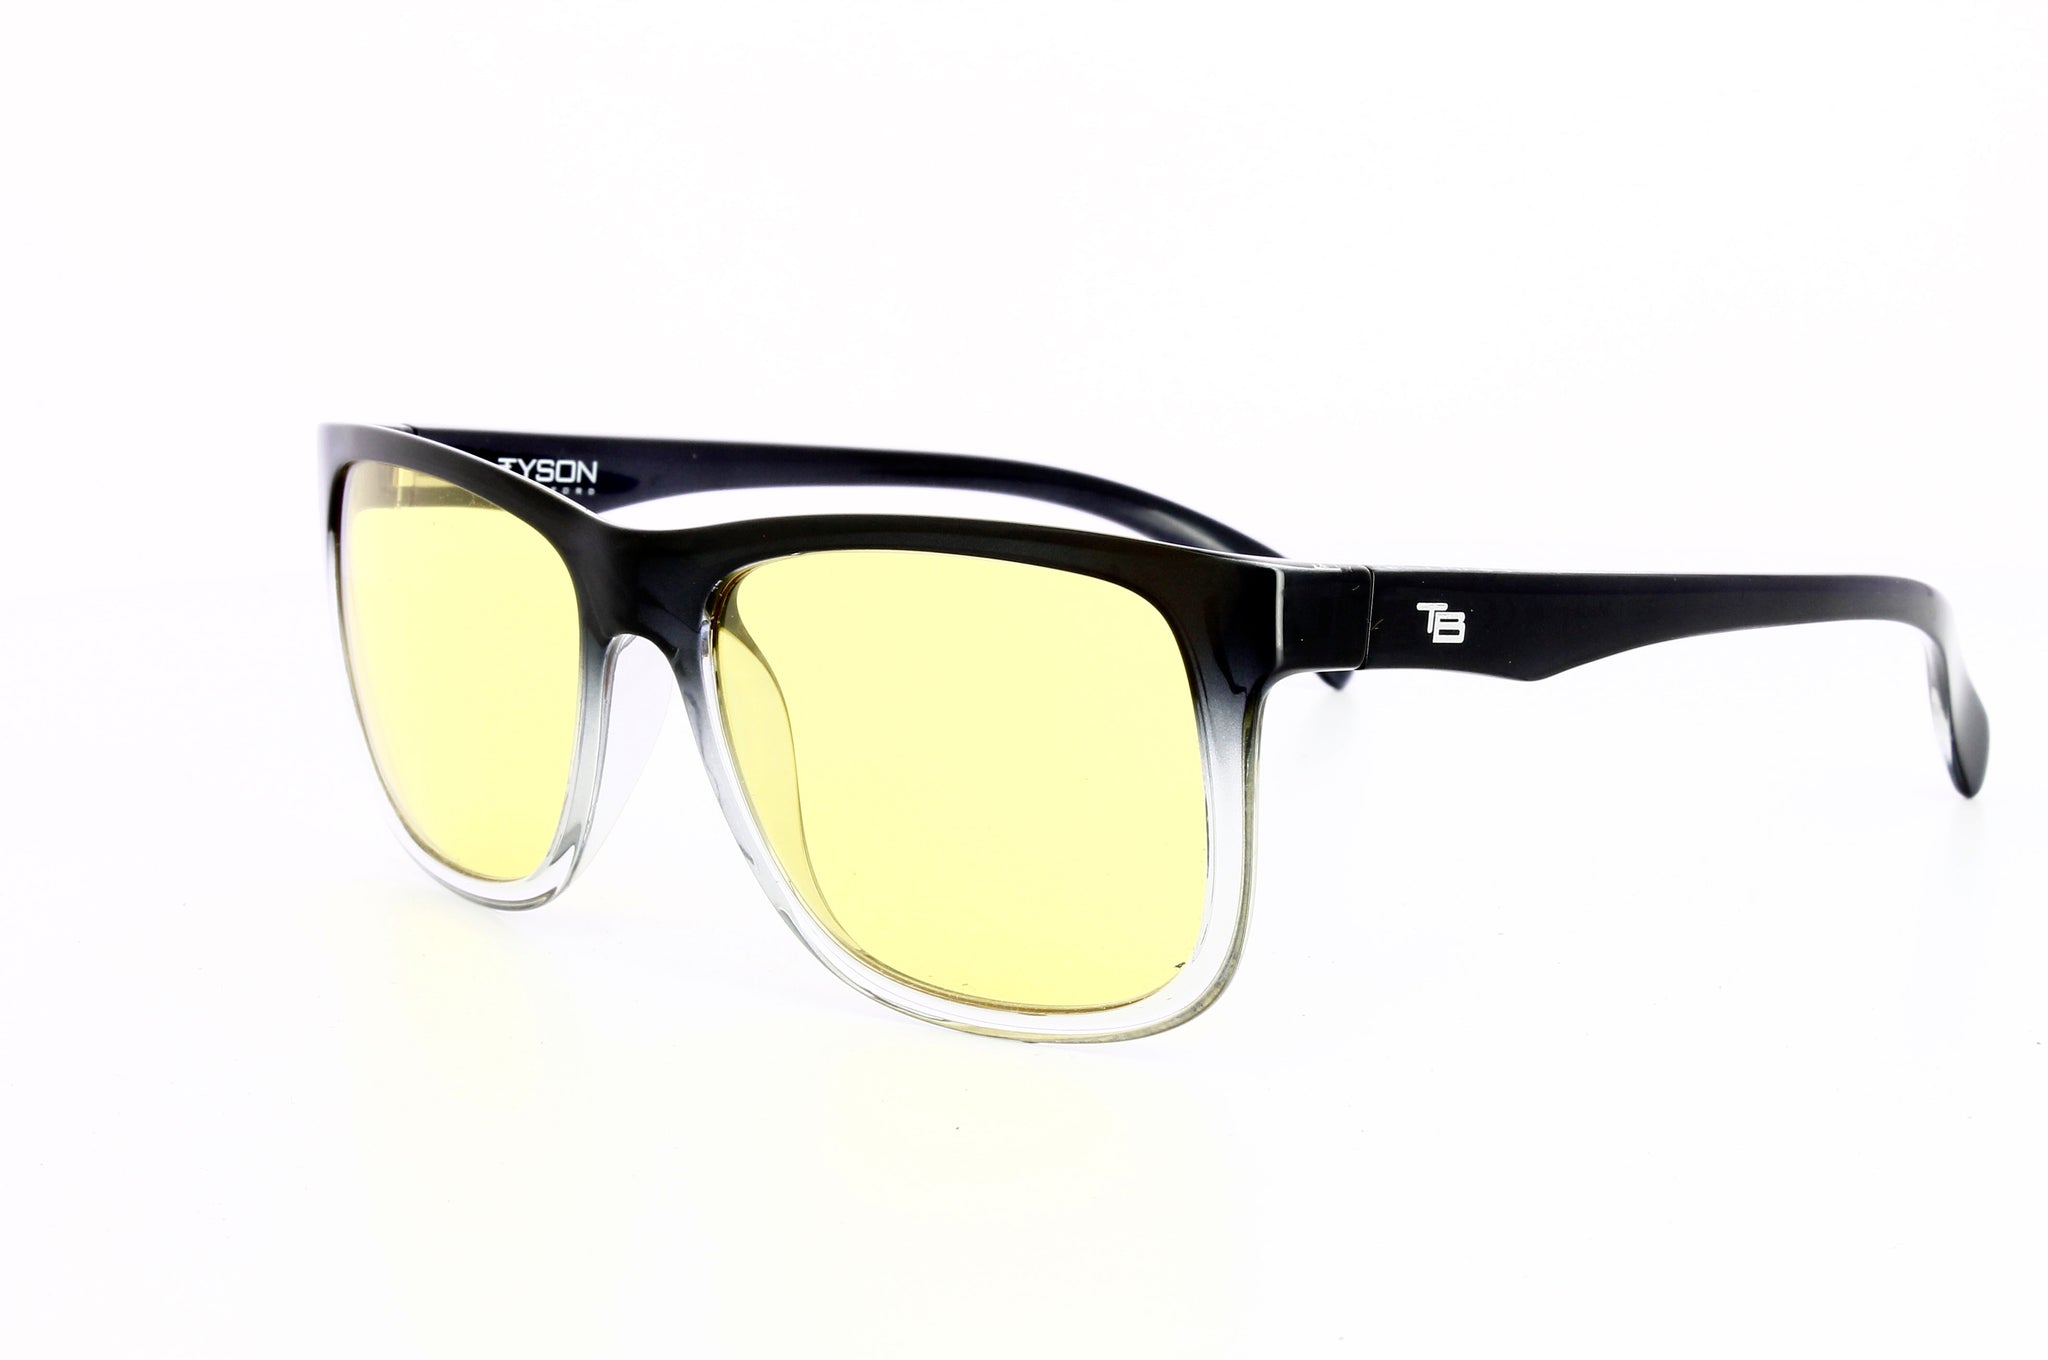 TB Capri Rectangular Sunglasses